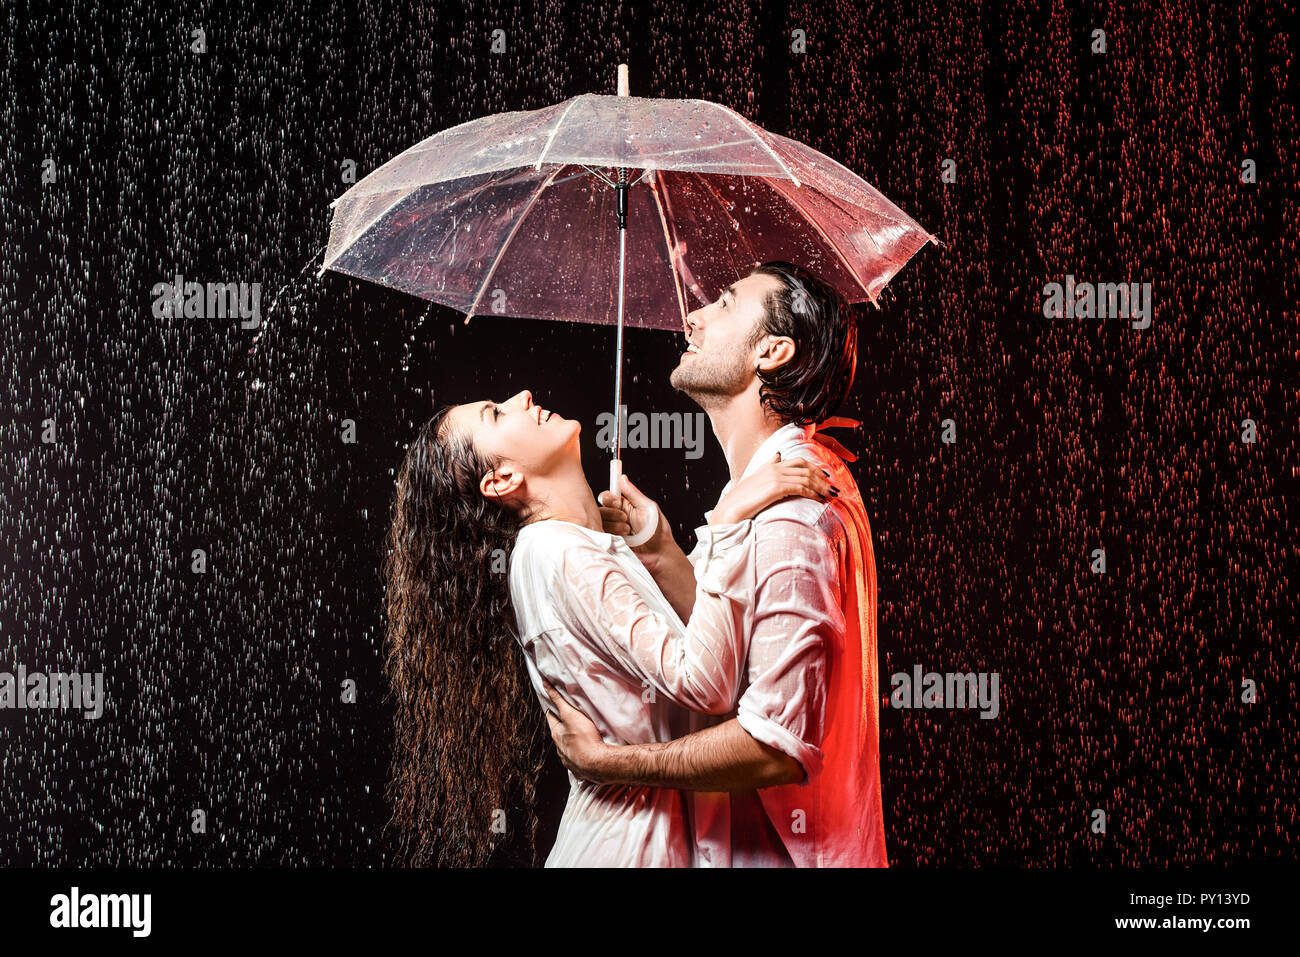 Песня дождь и двое в путь. Под дождем. Влюблённые под дождём. Двое под дождем. Влюбленная пара под дождем.